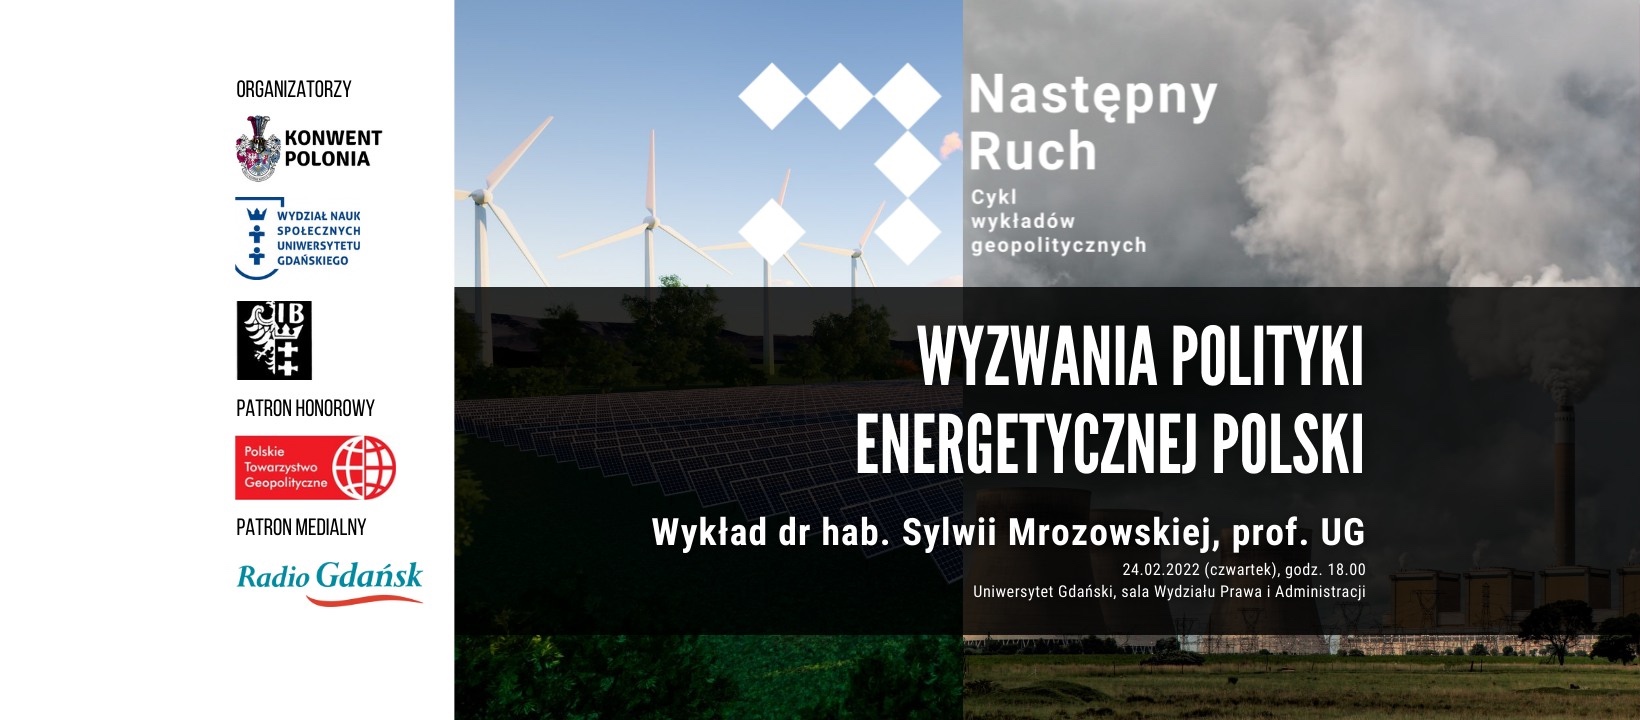 Wyzwania polityki energetycznej Polski